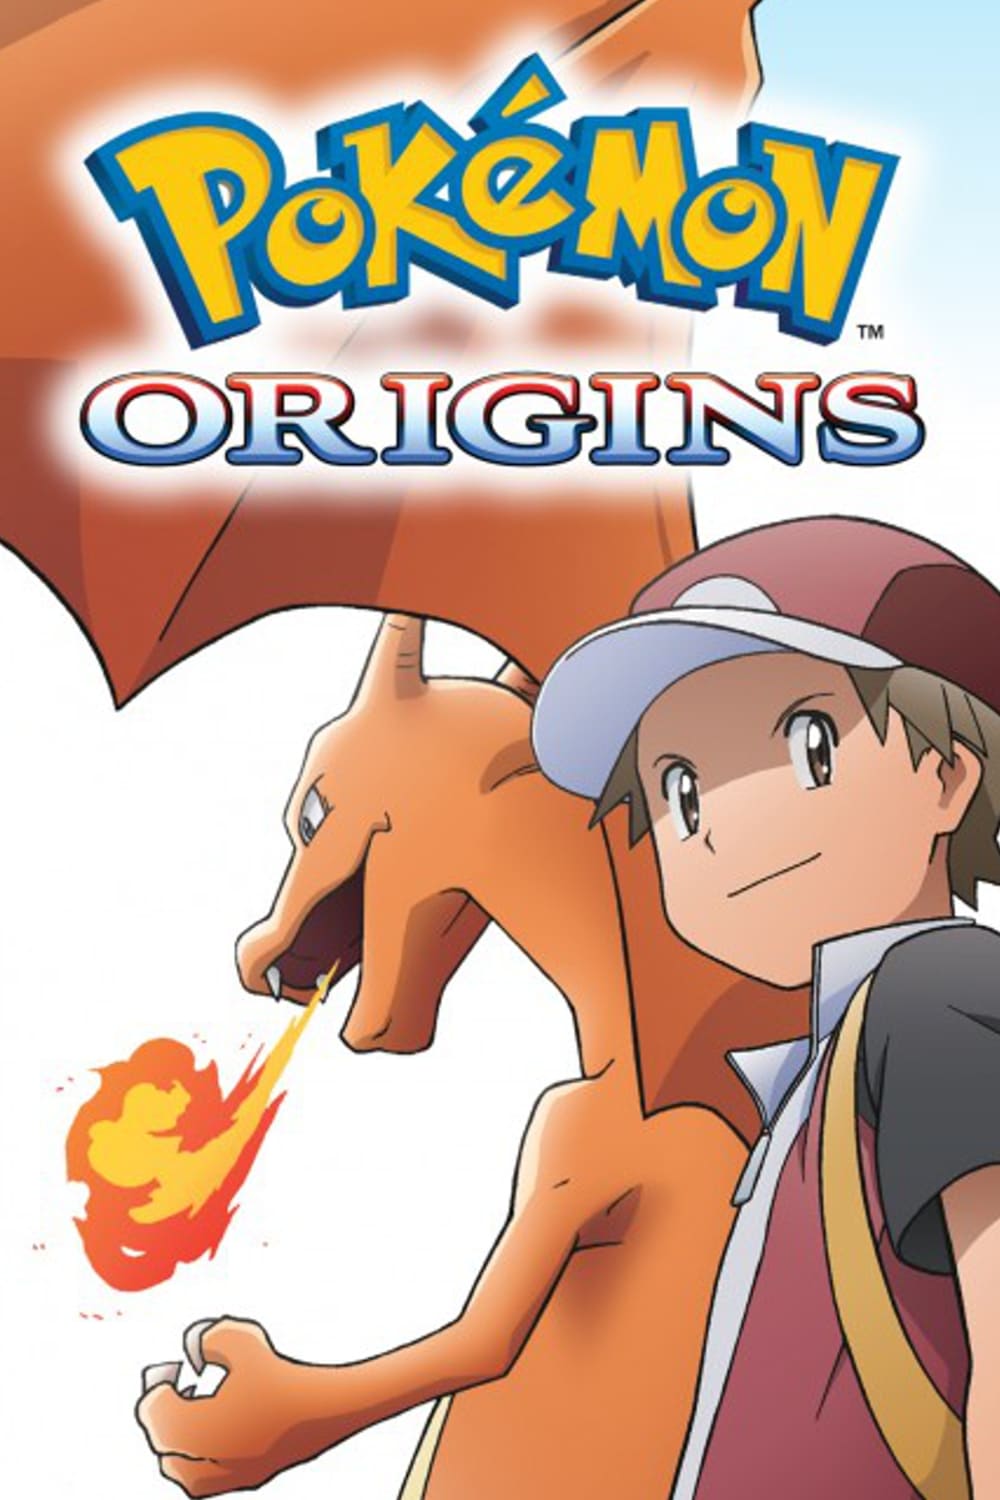 Pokémon: les Origines (2013)